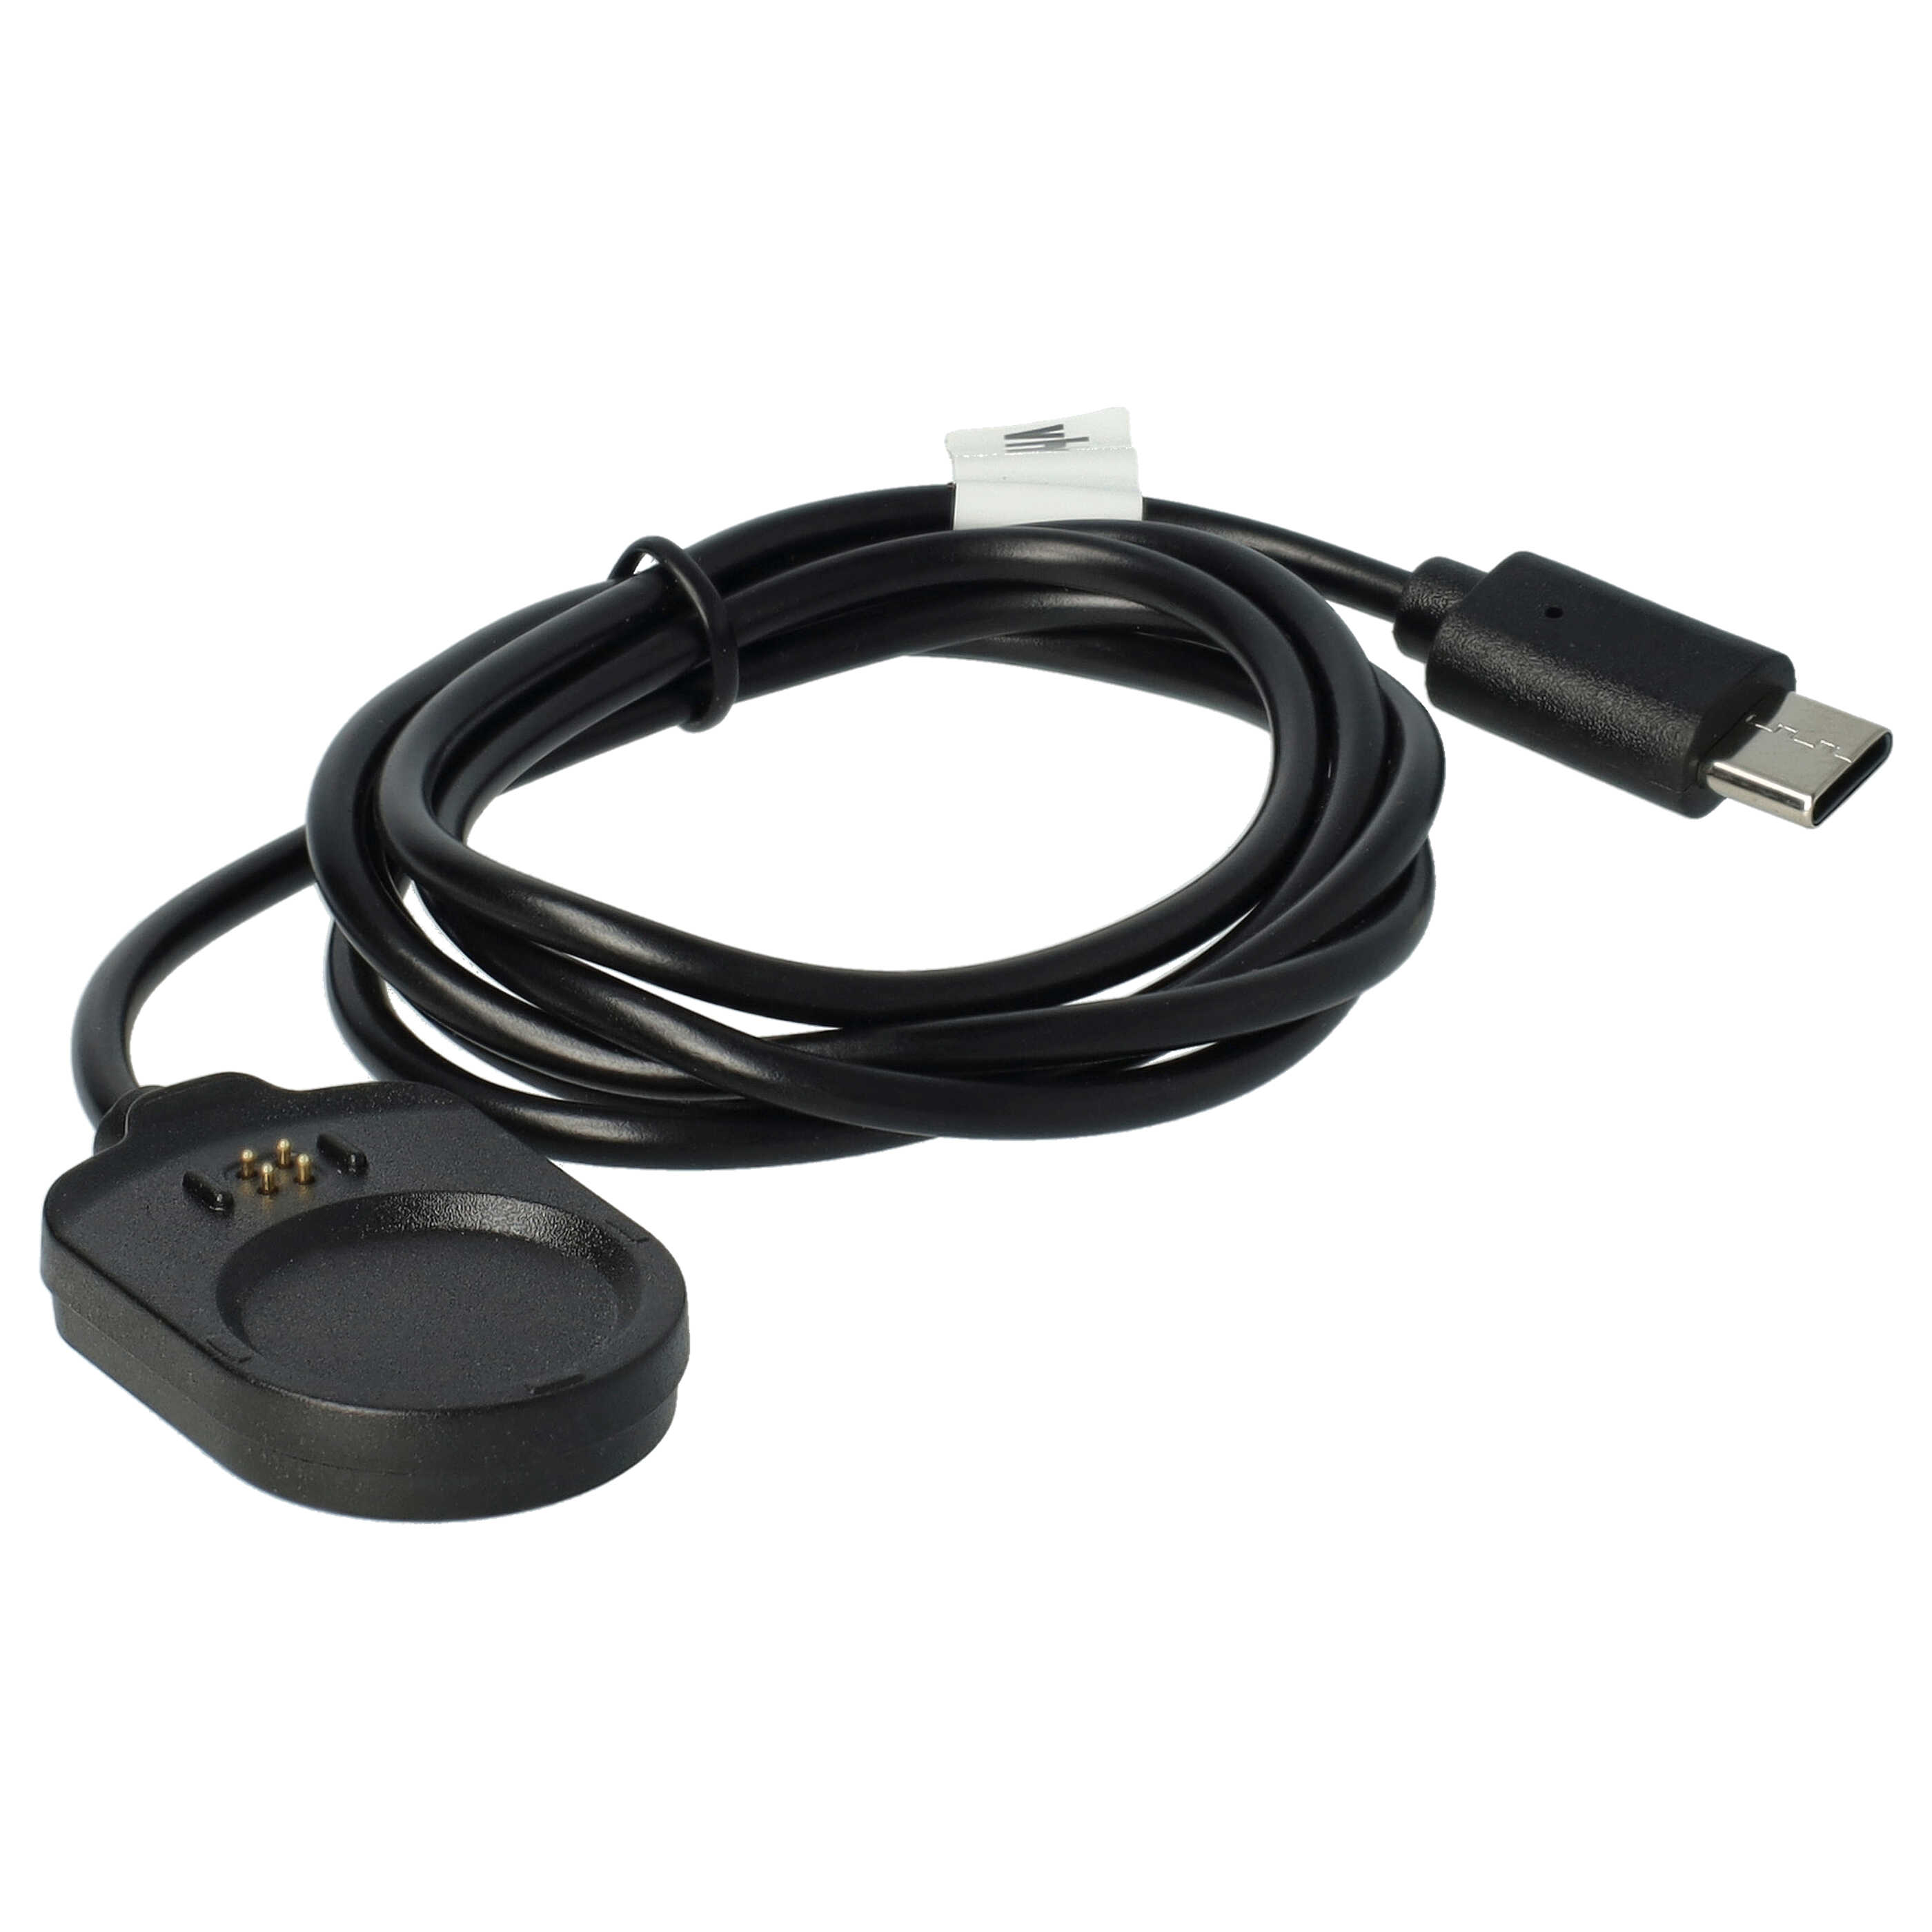 Cable de carga USB reemplaza Garmin 010-13225-14 para smartwatch Garmin - negro 100 cm